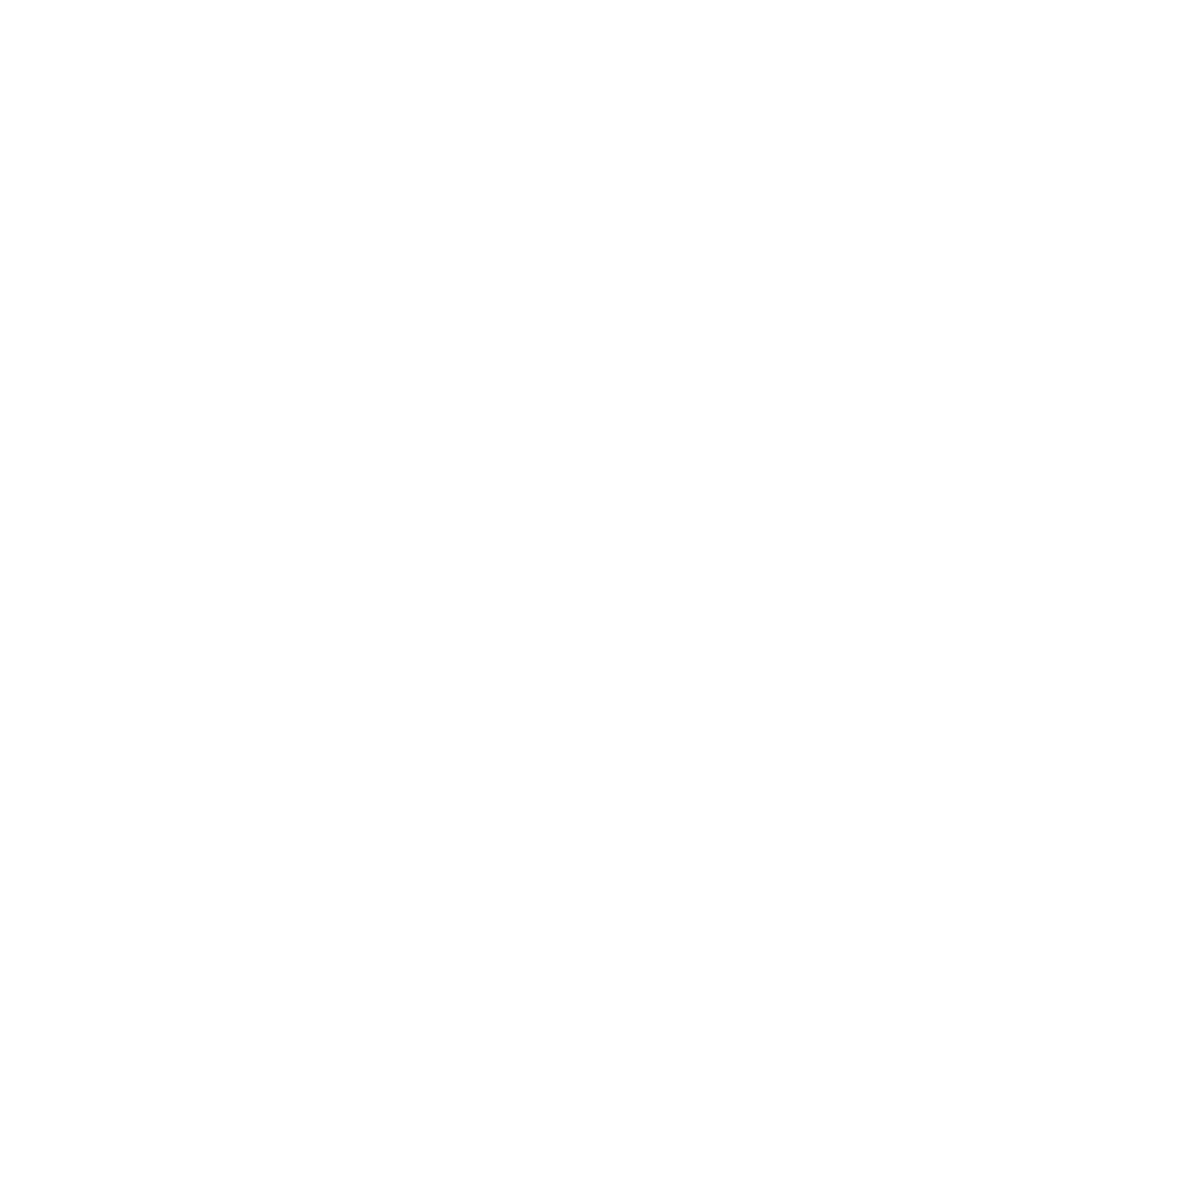 Clonable logo dark background